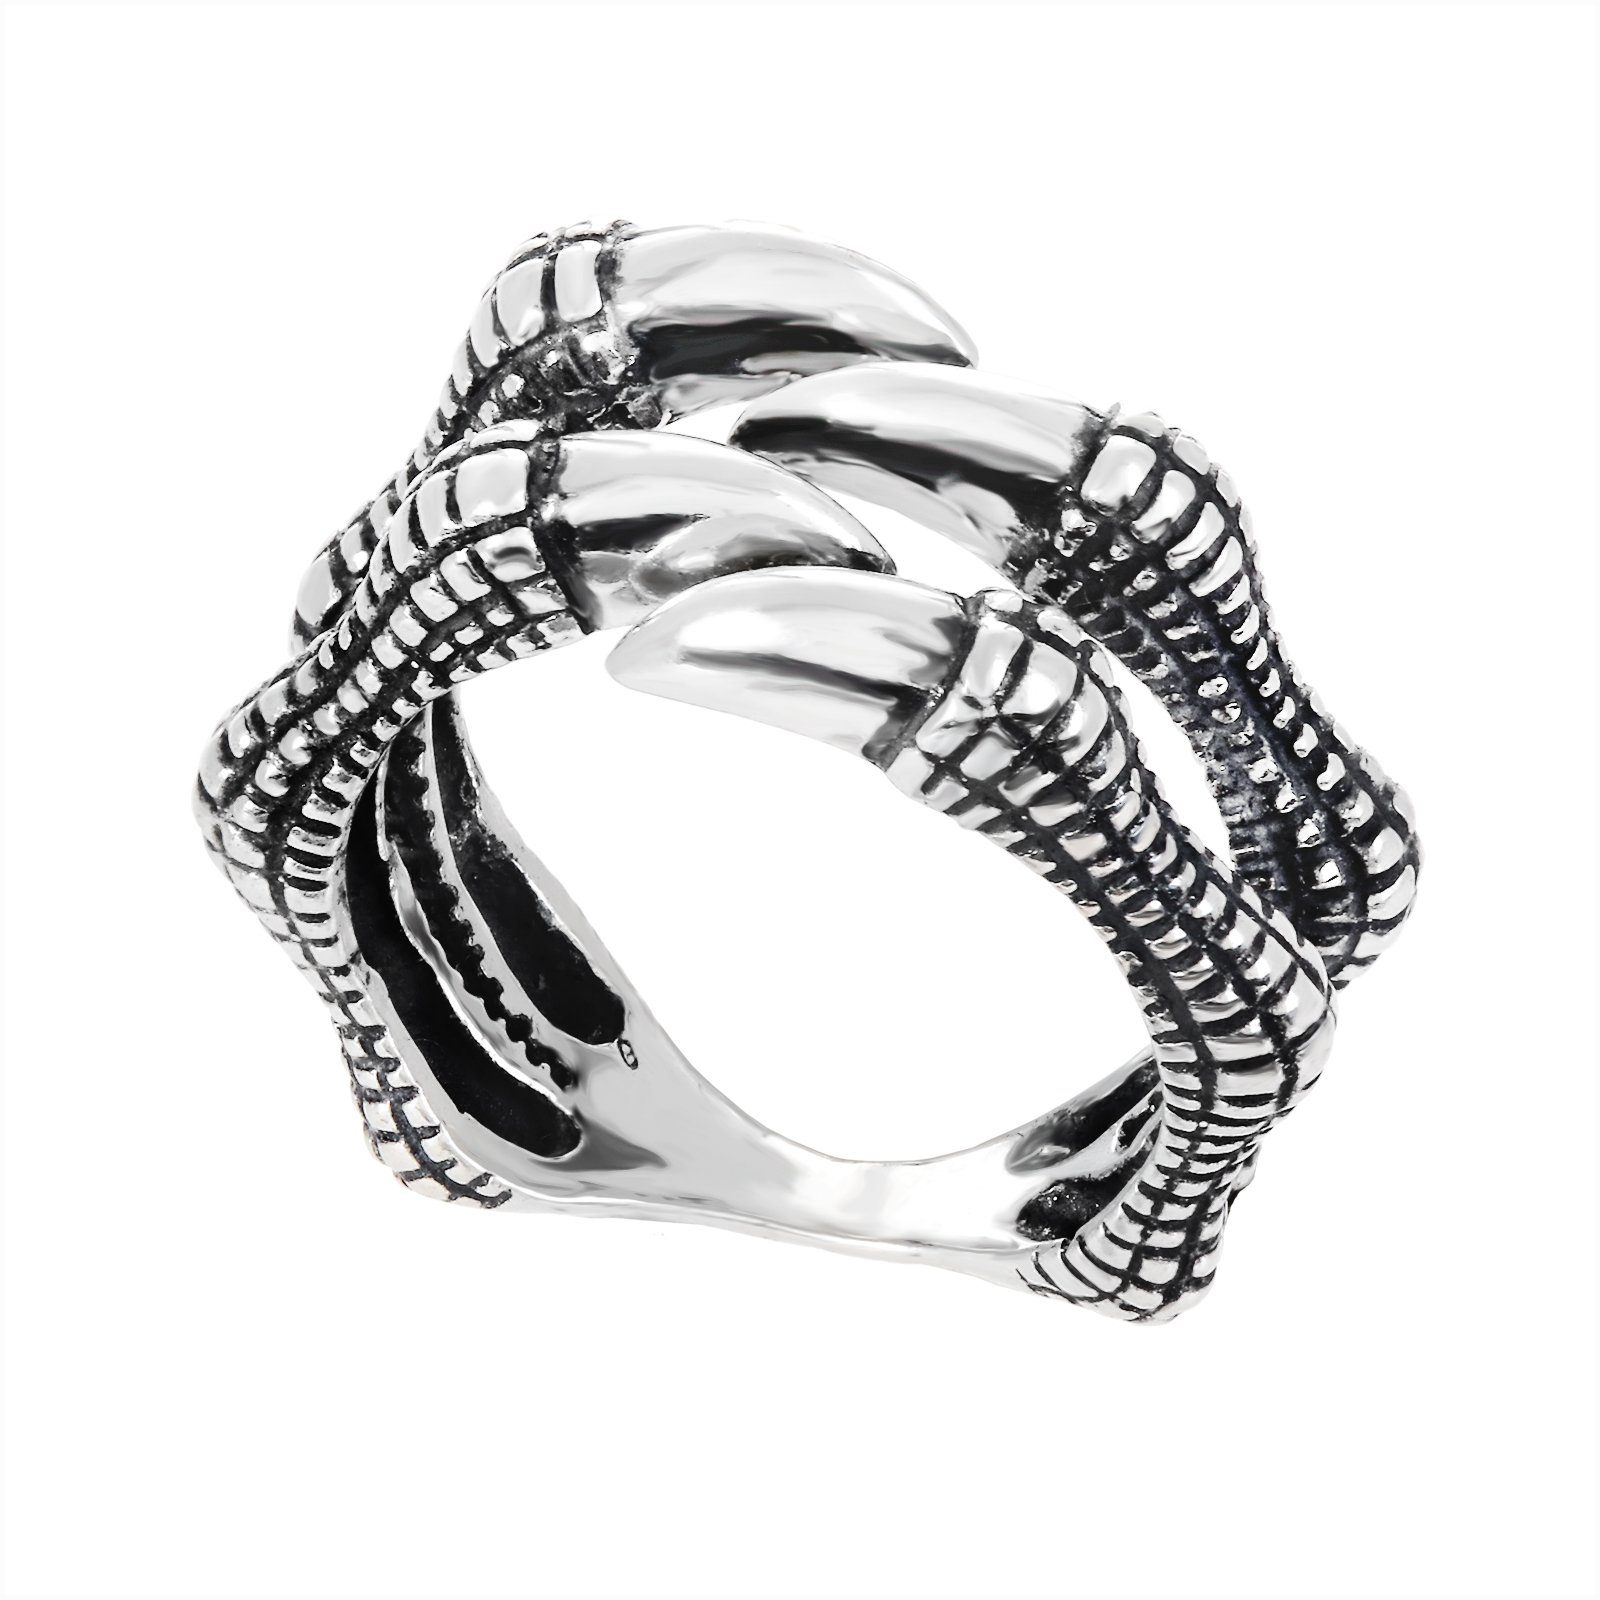 NKlaus Silberring 925 Sterling Silber Herrenring Ringgröße 67 21,5mm, Fingerring mit Motiv | Silberringe